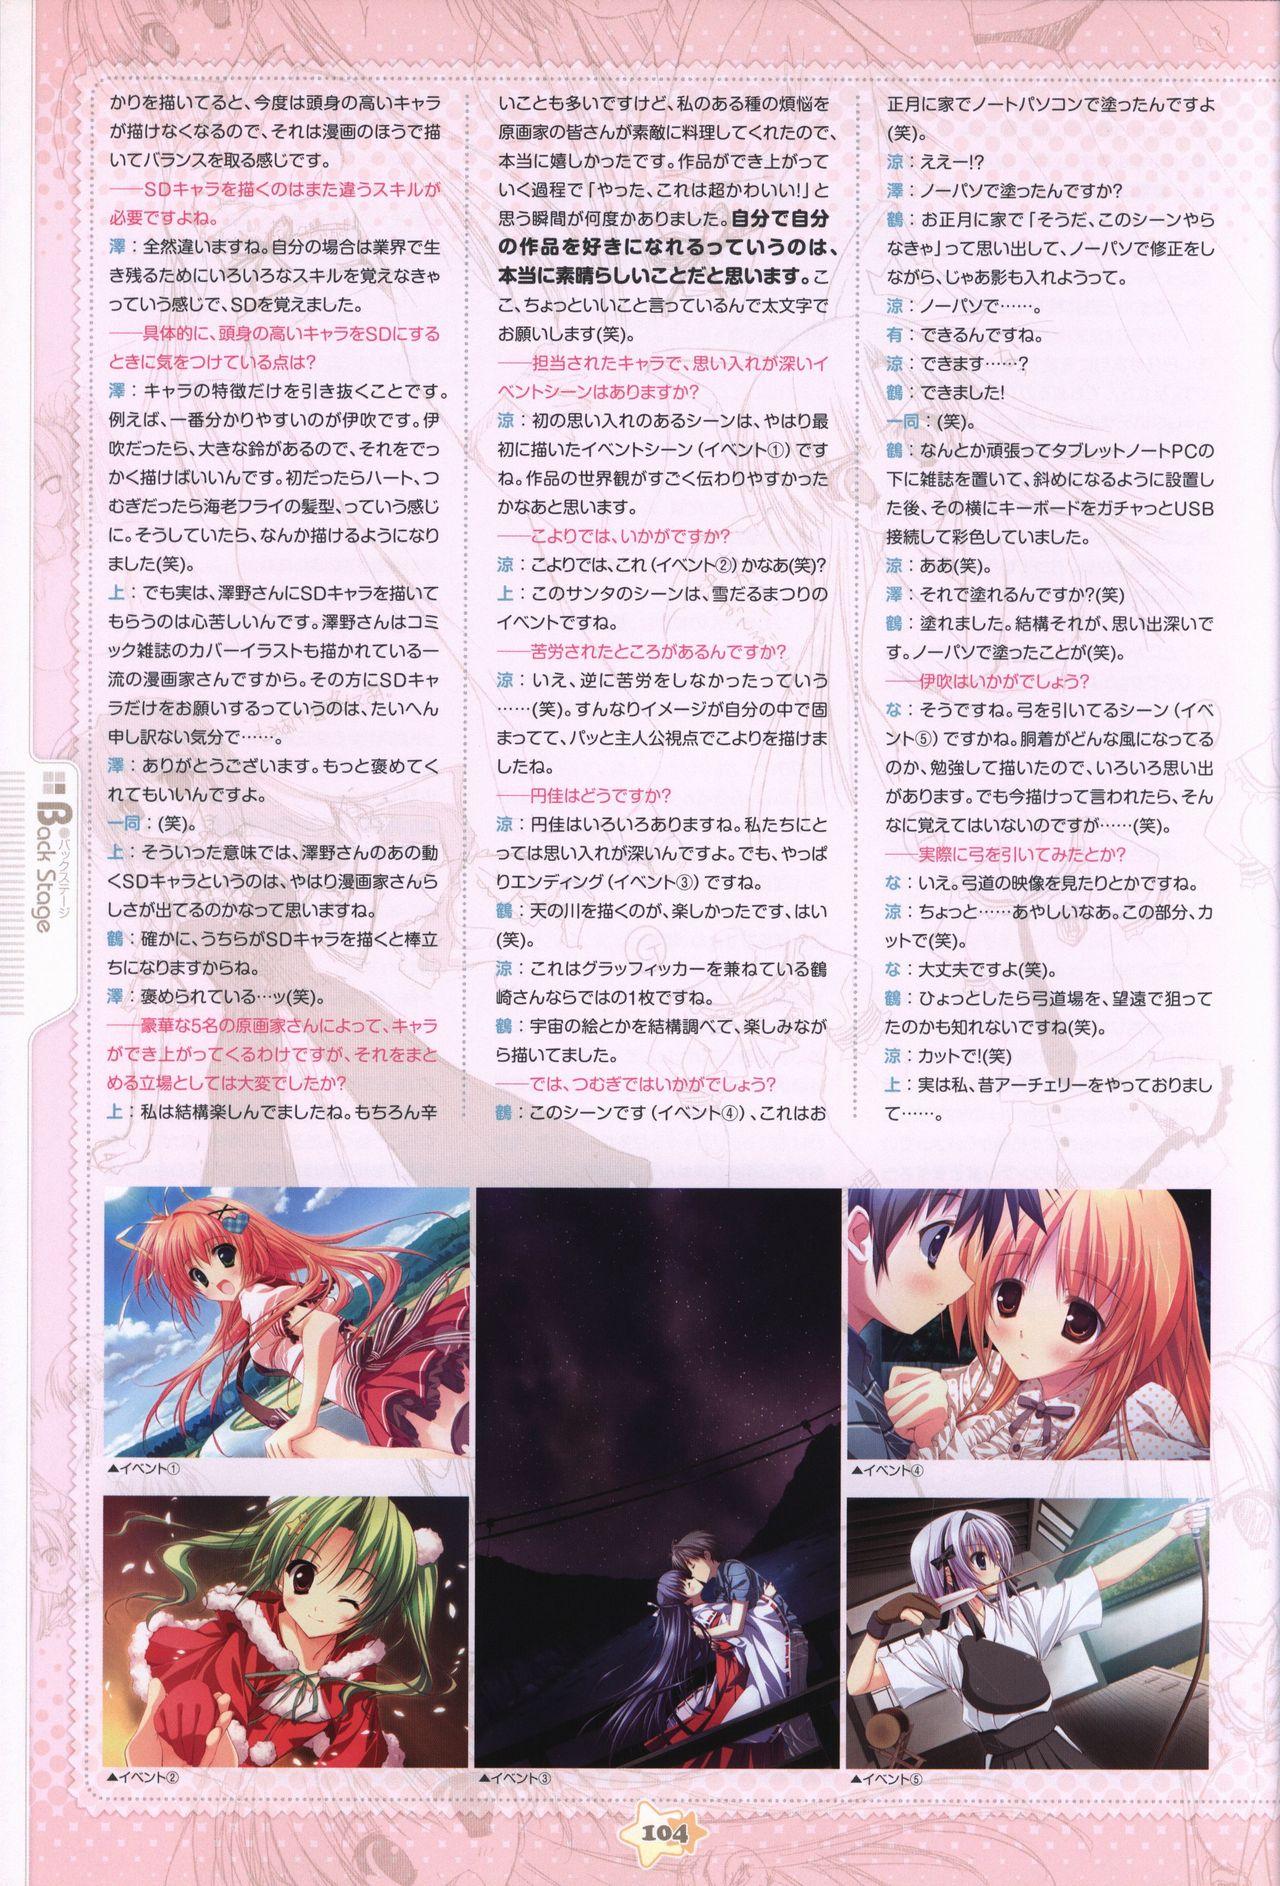 Hoshizora e Kakaru Hash visual fanbook 105